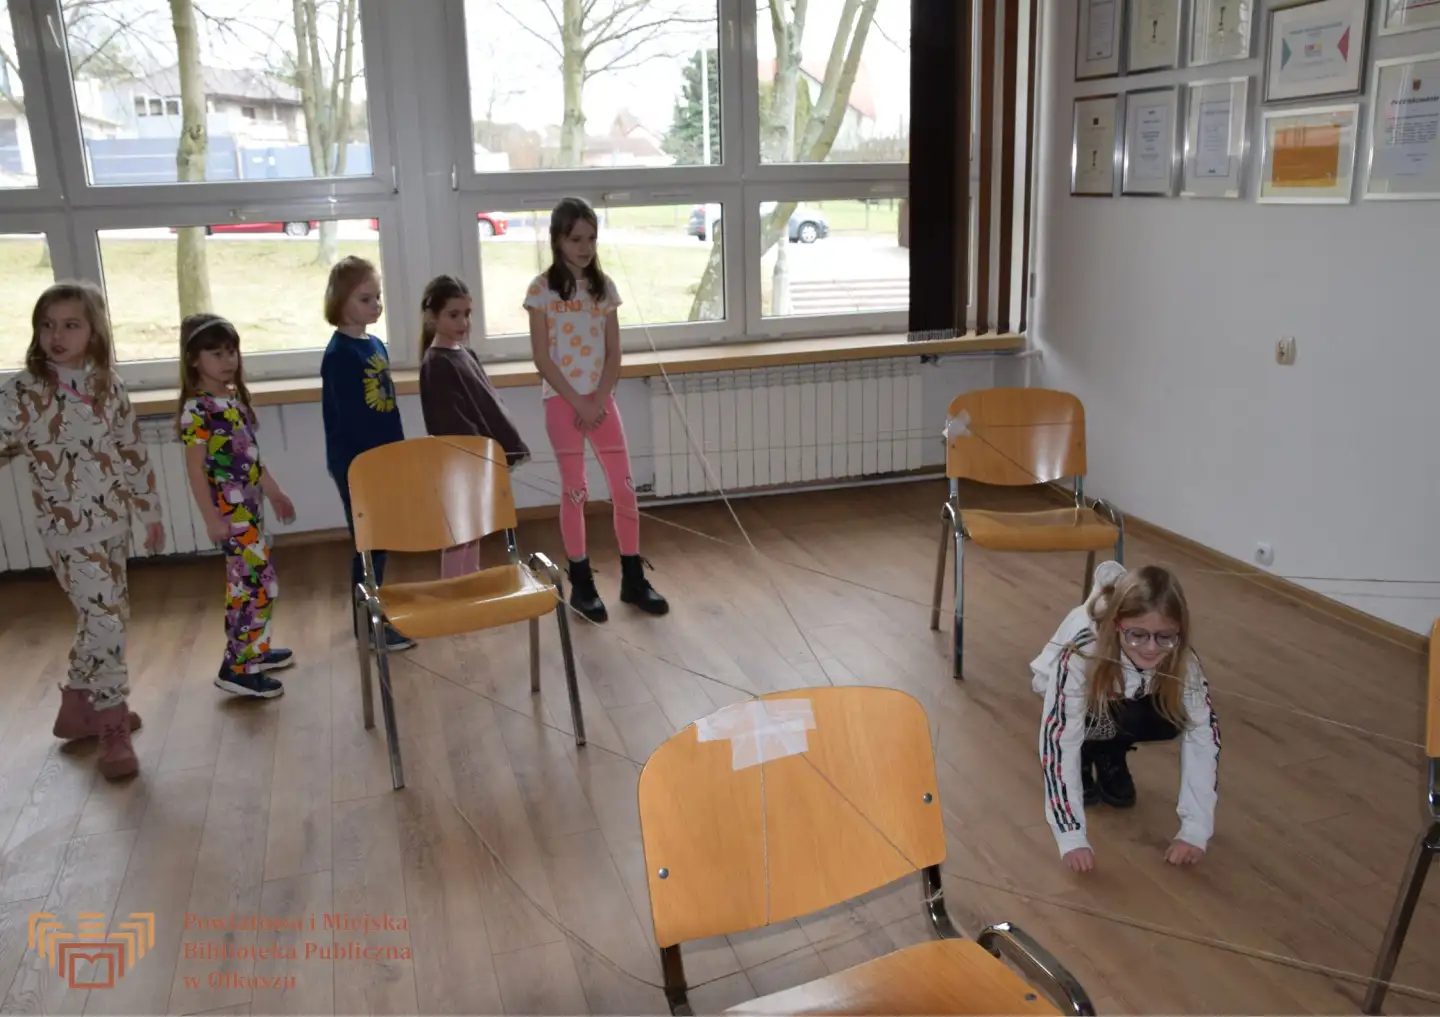 Grupa dzieci stoi przy krzesełkach, między którymi przeciągnięty jest sznurek na kształt pajęczyny. Jedna dziewczynka przechodzi pod sznurkiem.